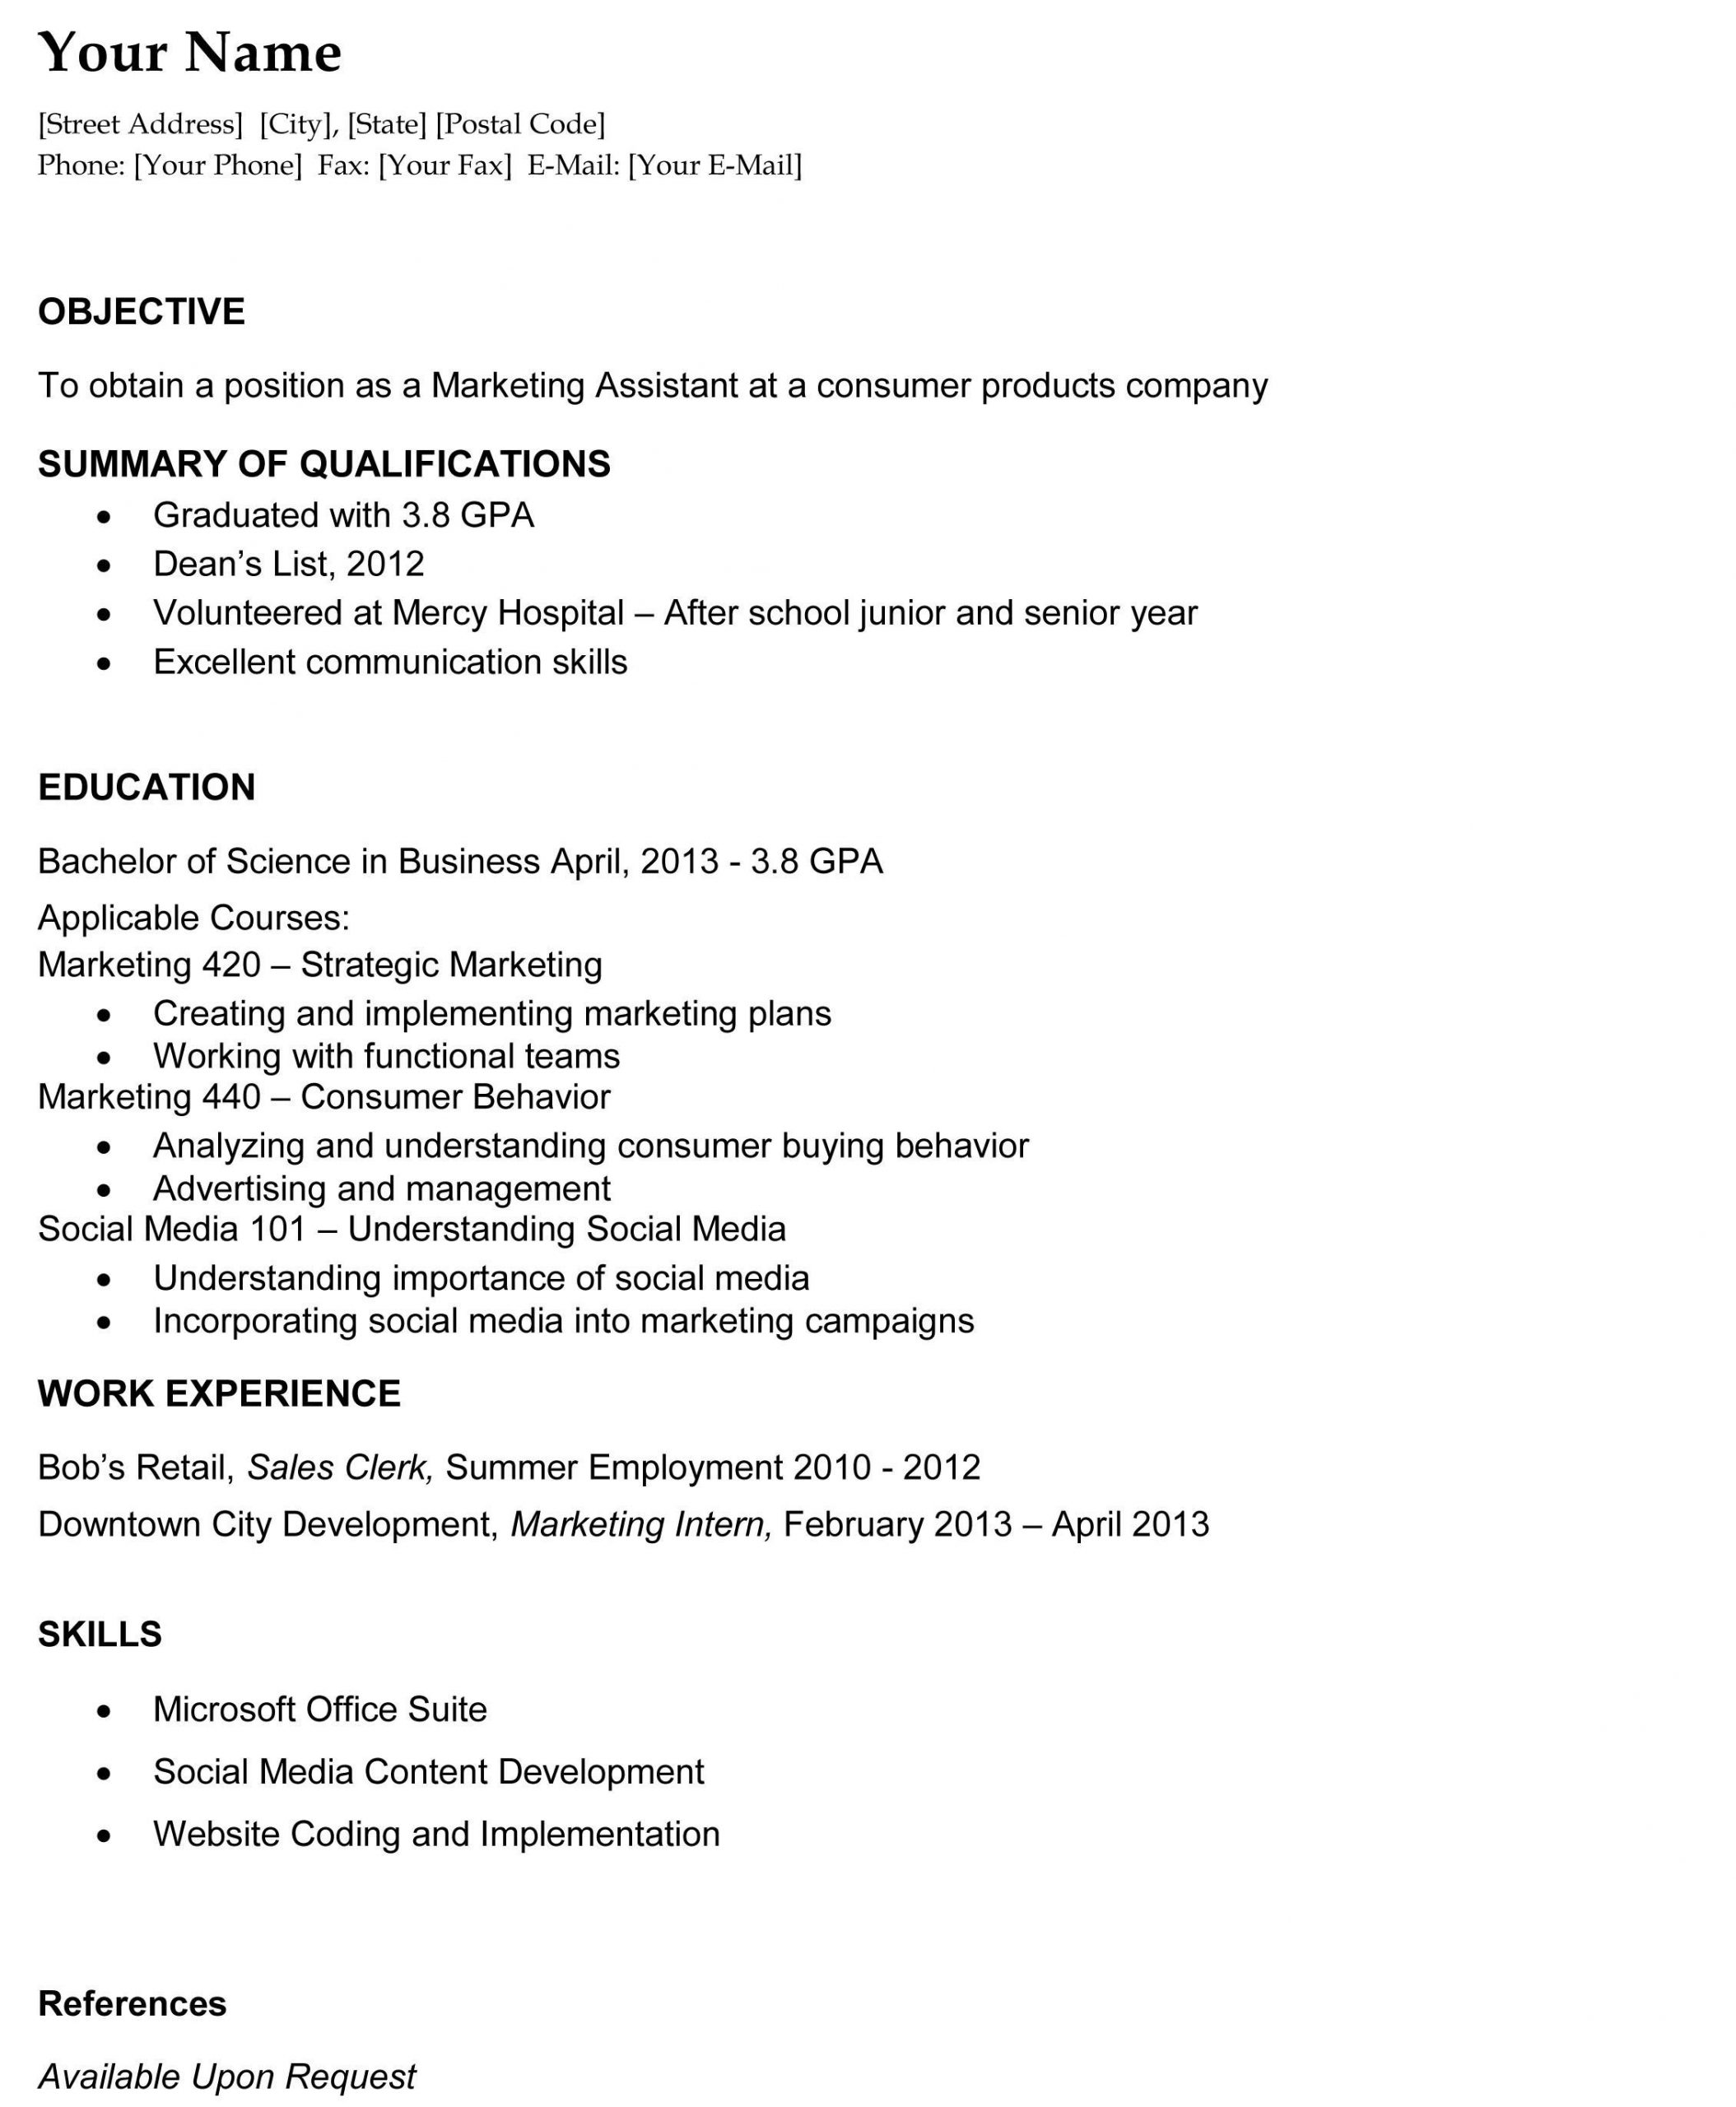 Sample Resume Objective for Summer Job 15 Resumes/ Coverletters Ideas Cover Letter for Resume, Job …